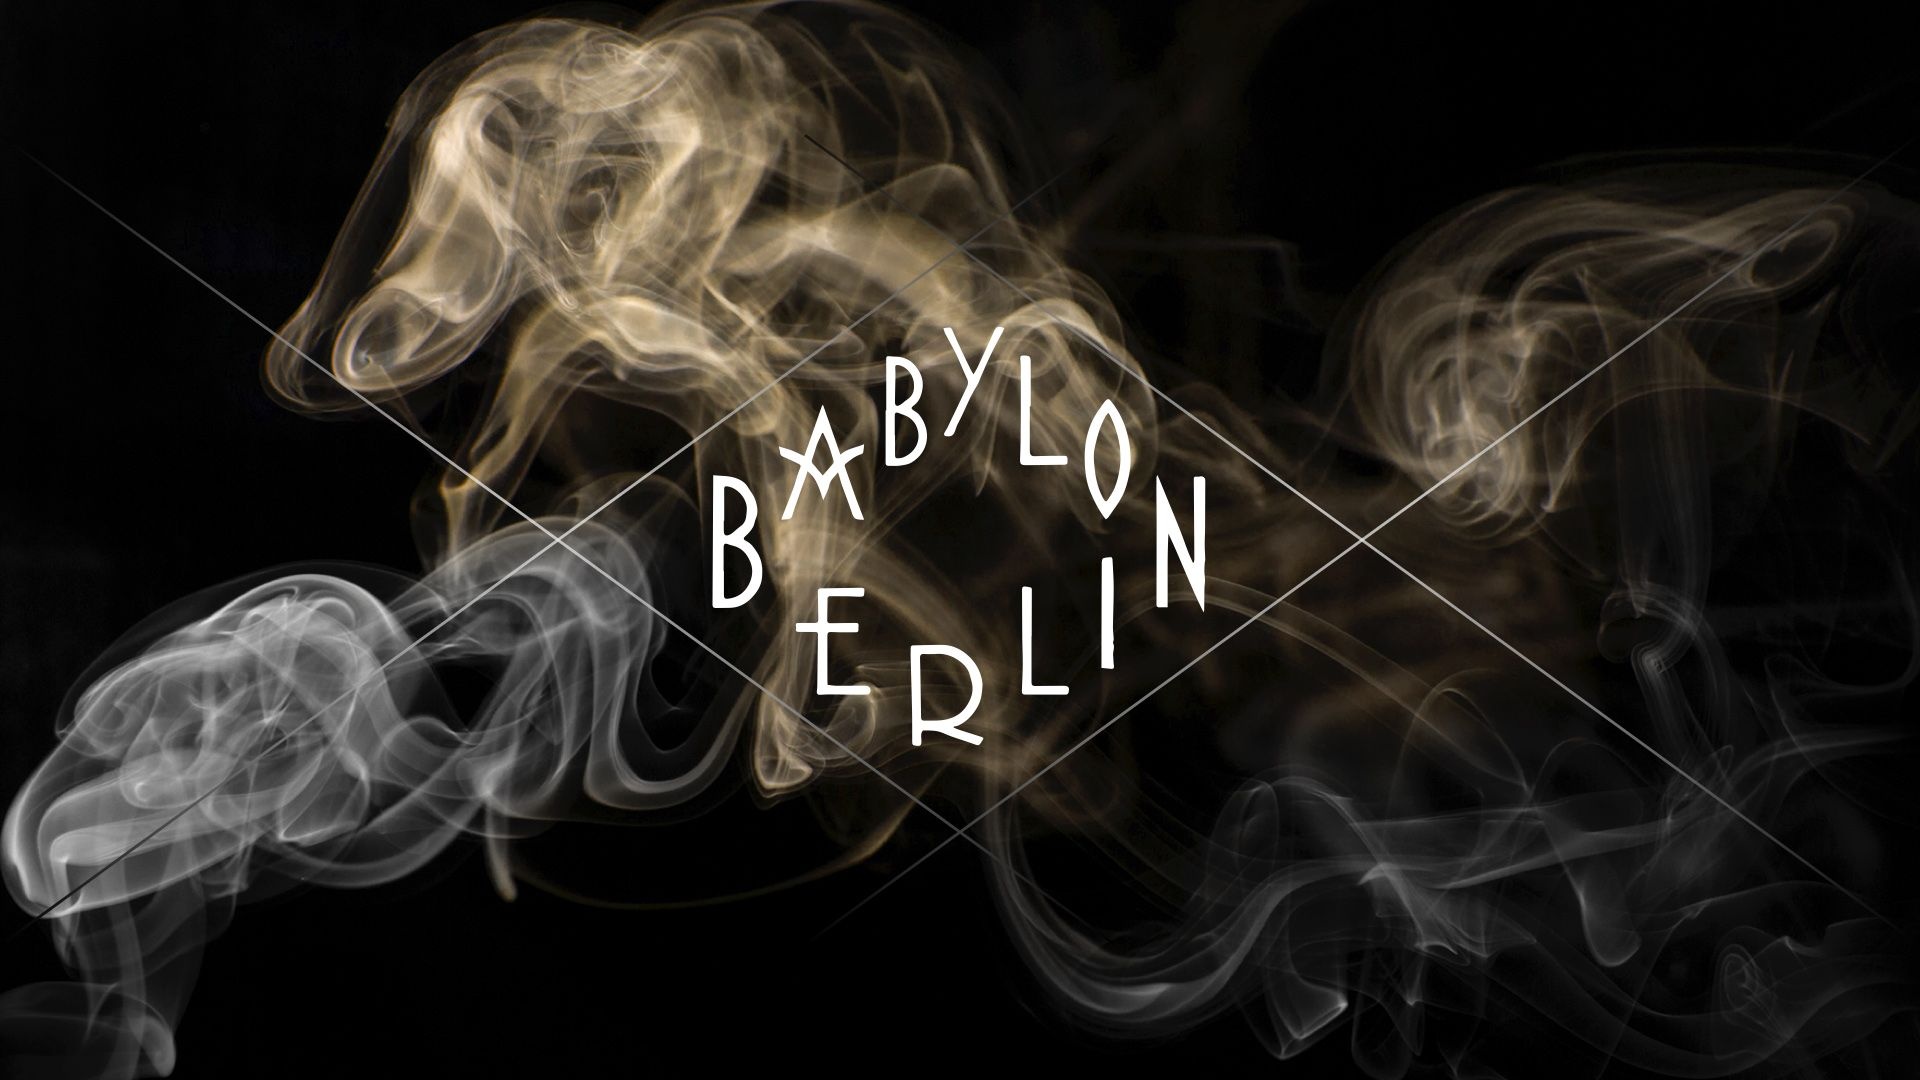 Babylon Berlin Wallpapers - Top Free Babylon Berlin Backgrounds 1920x1080